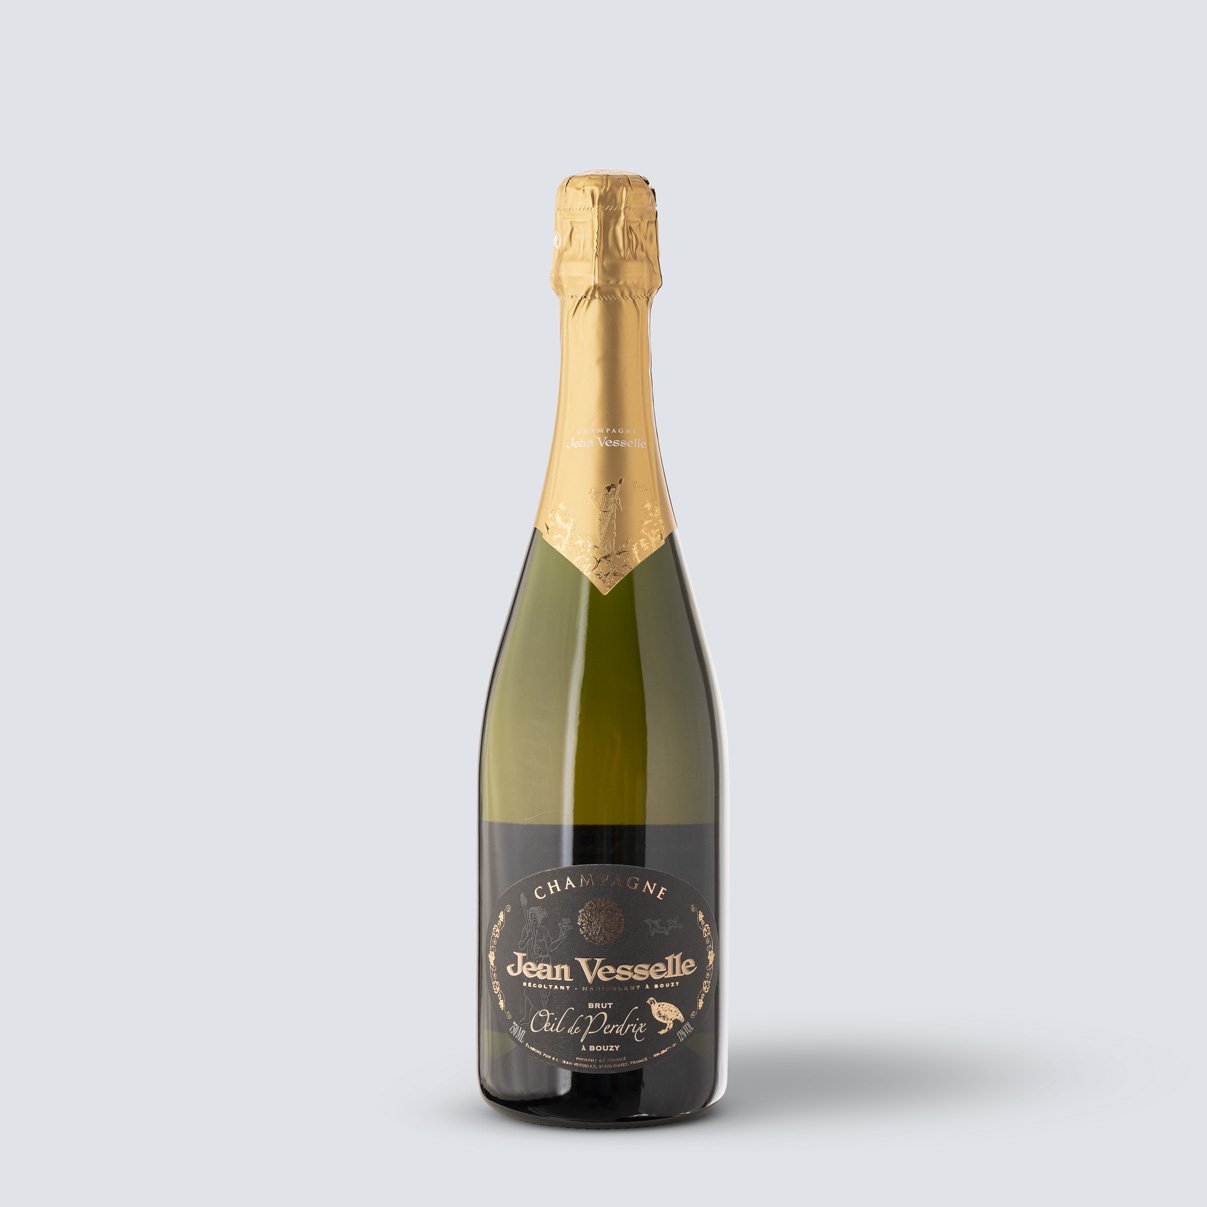 Champagne Brut "Oeil de Perdrix" Jean Vesselle